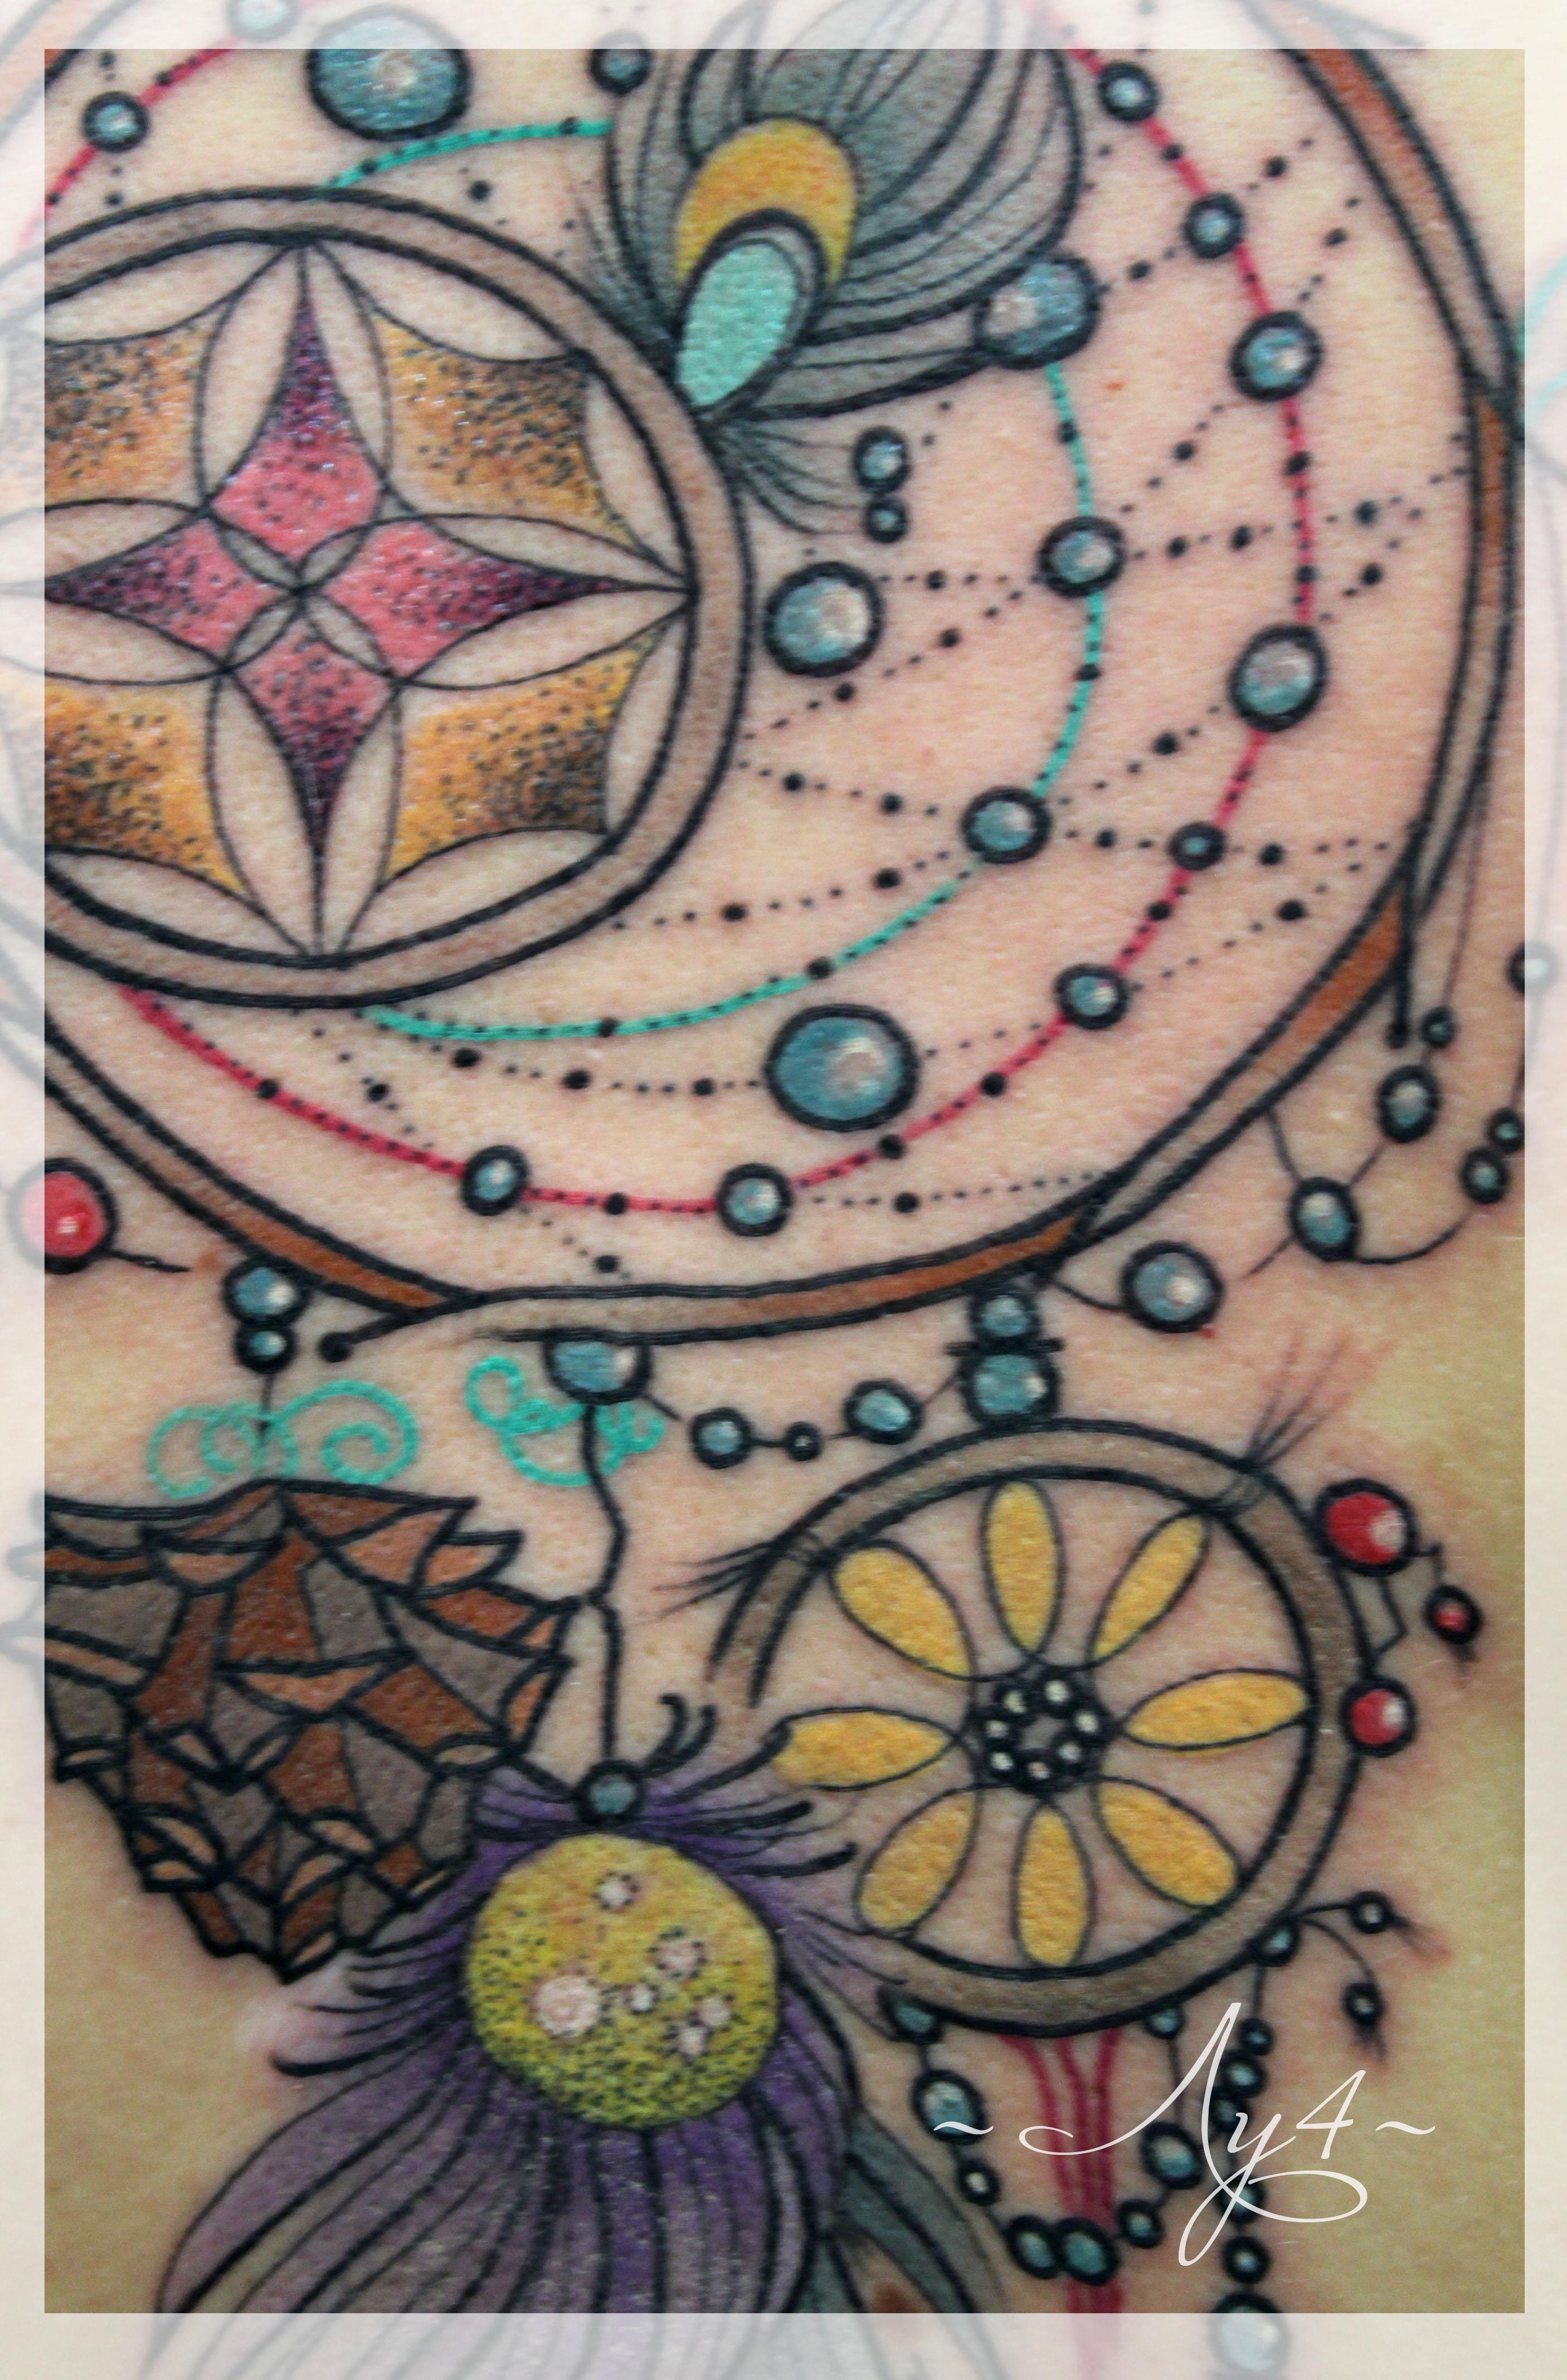 Художественная татуировка «Ловец снов» от мастера Кати Луч. Работа по индивидуальному эскизу. В традиционном стиле с элементами дотворка.